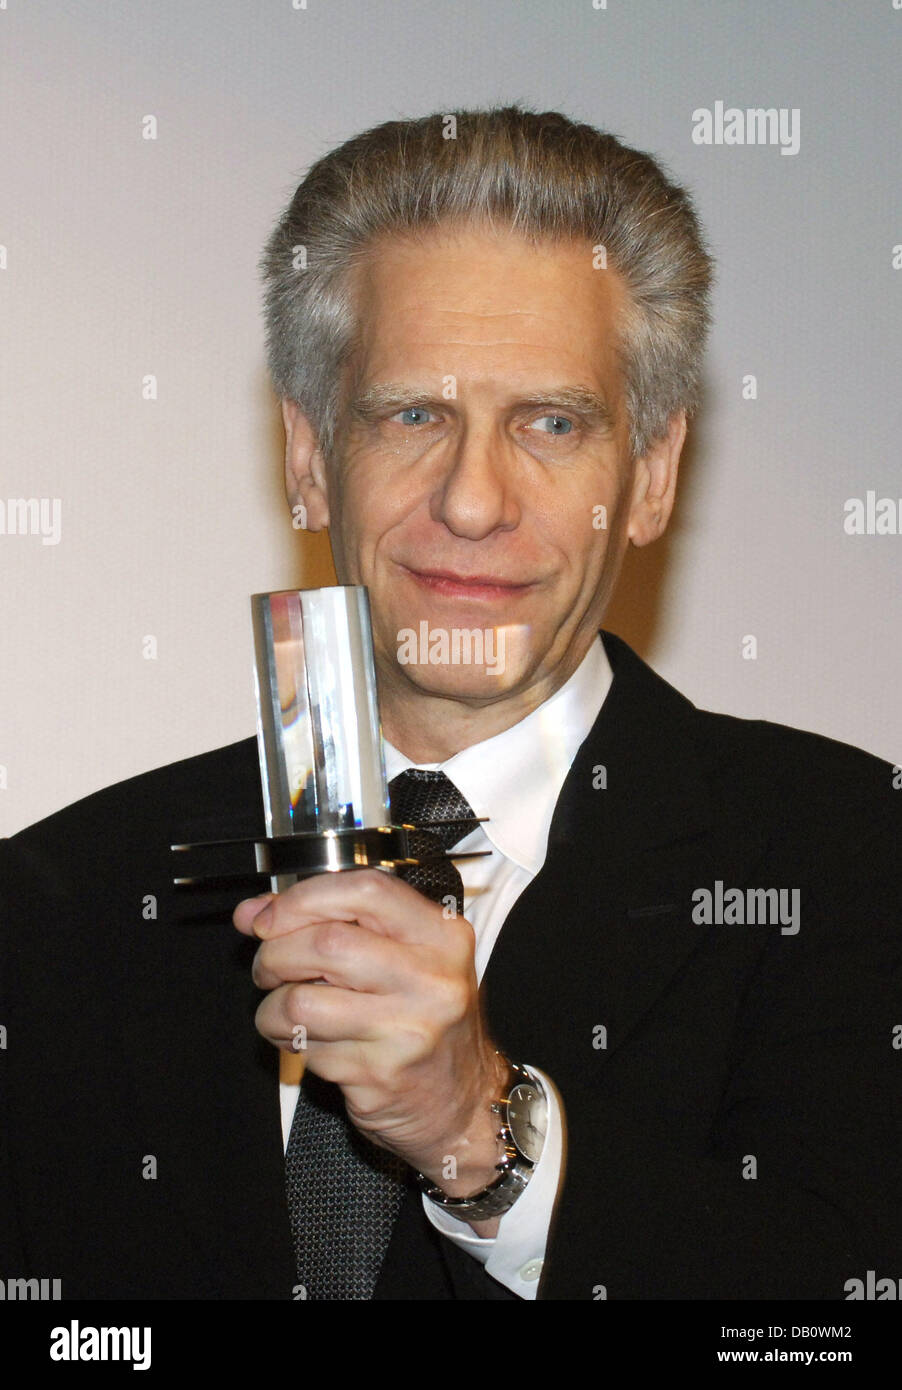 El cineasta canadiense David Cronenberg posa con su Premio Douglas-Sirk en la 15ª Filmfest de Hamburgo En Hamburgo, Alemania, el 28 de septiembre de 2007. Él aceptó el premio en fond aplausos por el público que ha asistido a su último trabajo "Eastern Promises" justo después. Foto: Wolfgang Langenstrassen Foto de stock